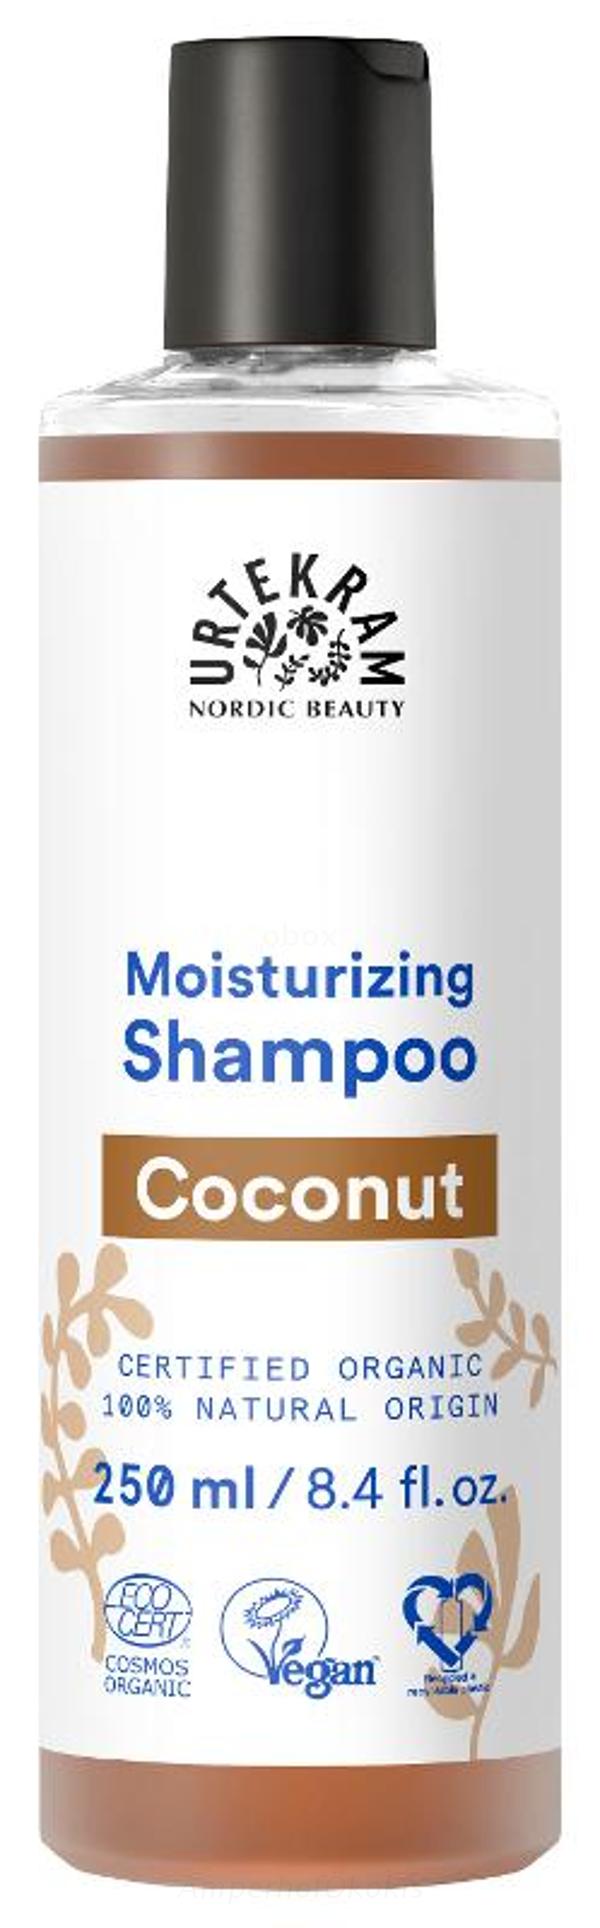 Produktfoto zu Shampoo Coconut 250 ml